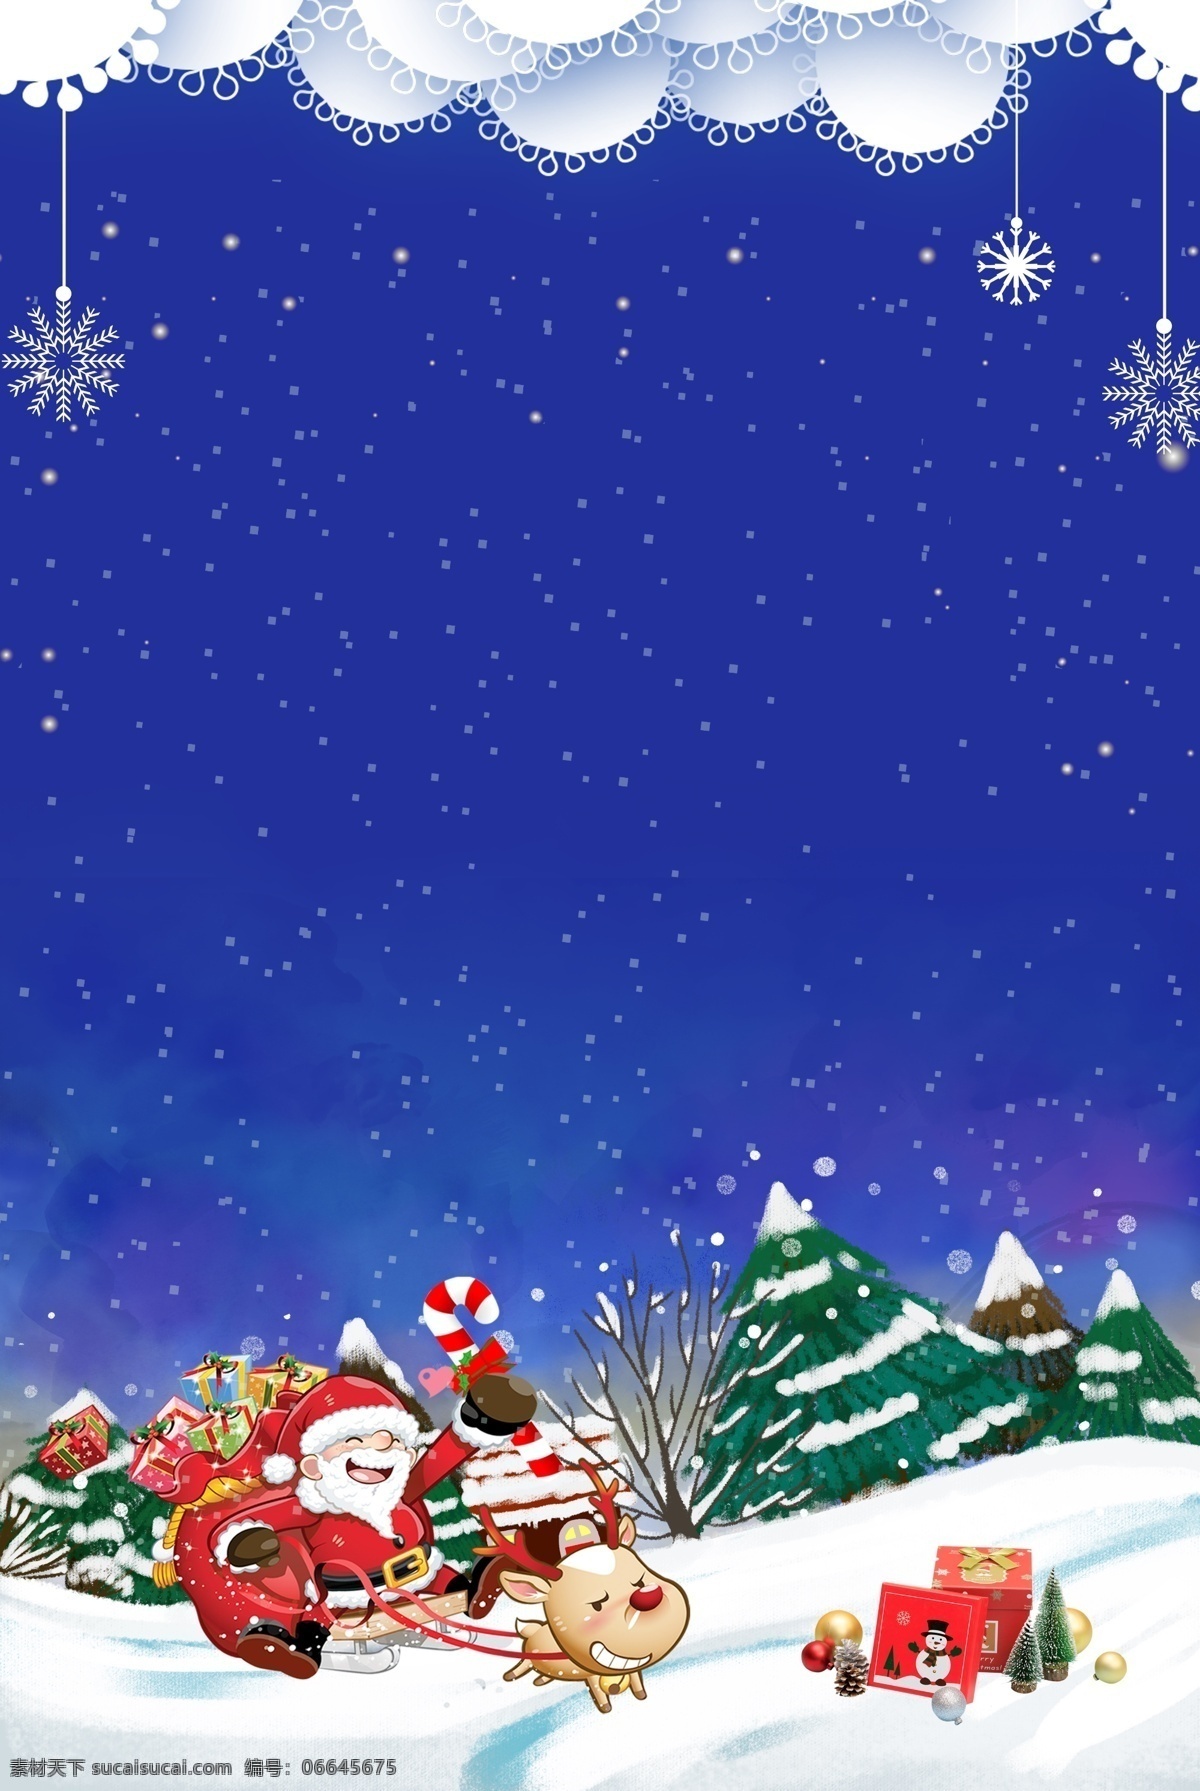 蓝色 唯美 圣诞 背景 圣诞节 蓝色背景 雪花 圣诞老人 平安夜 圣诞礼物 雪地 圣诞主题